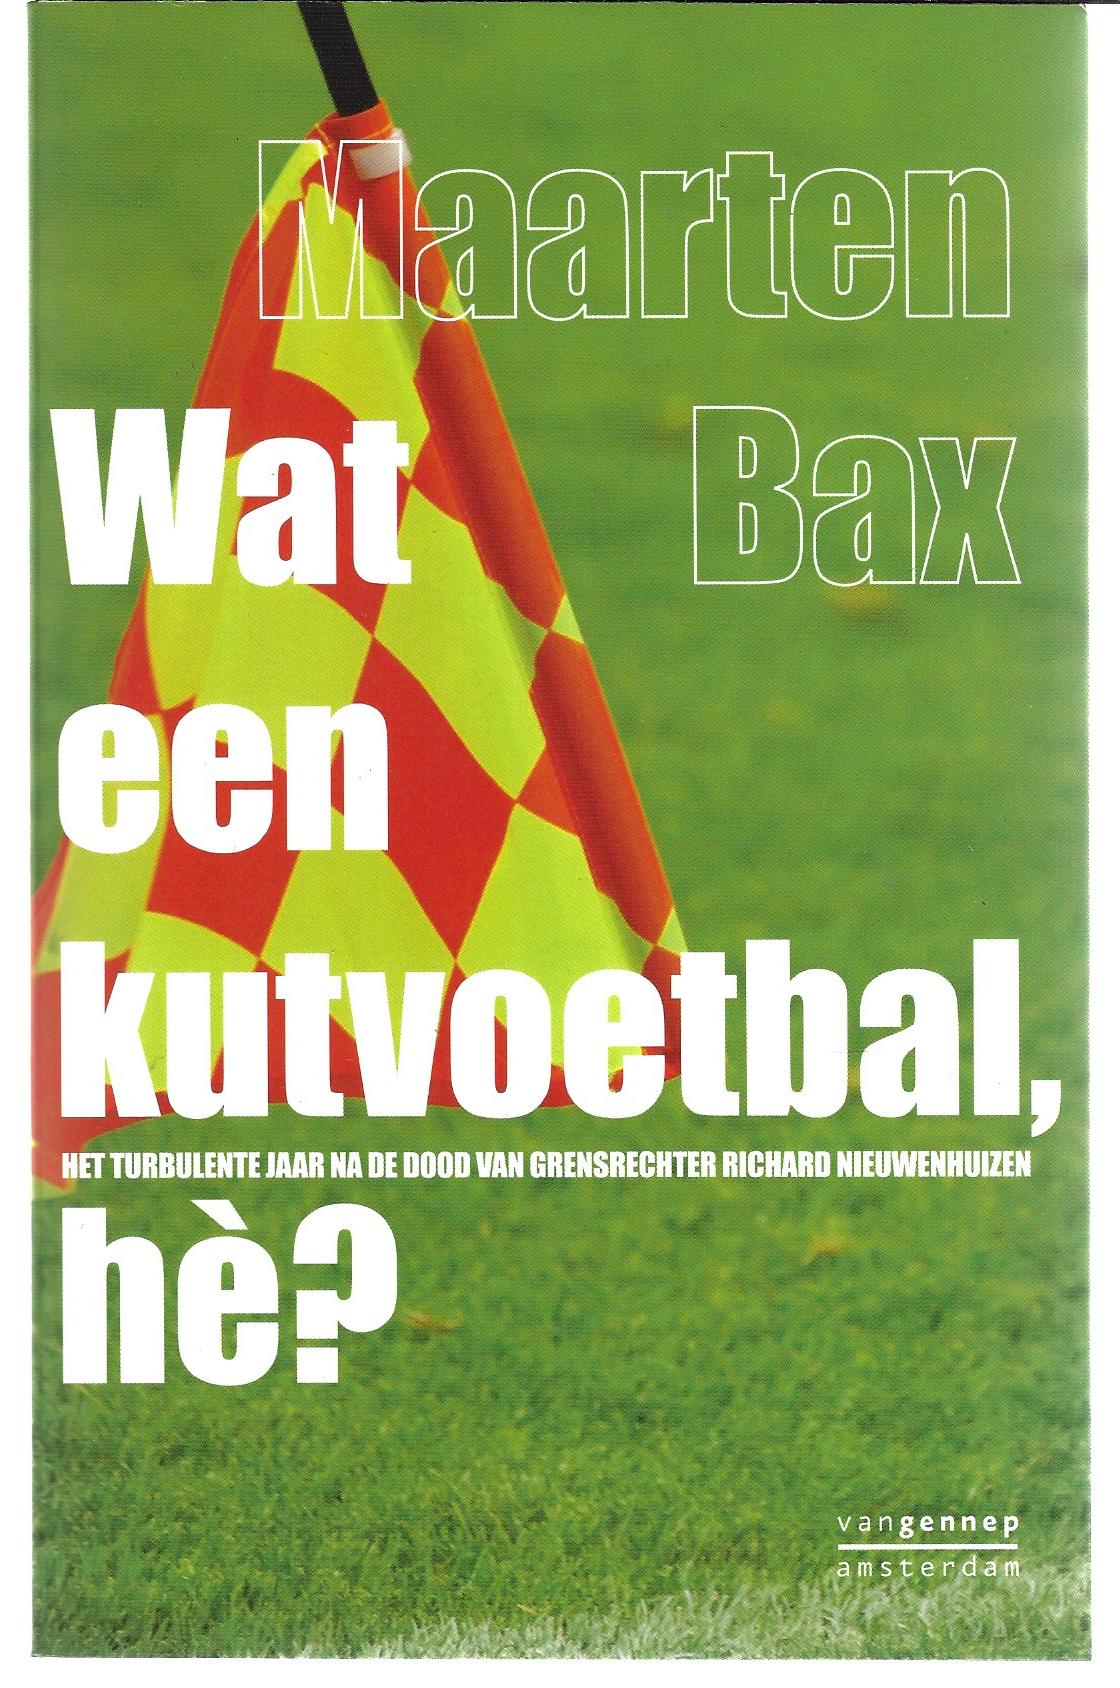 Bax, Maarten - Wat een kutvoetbal, h? -Het turbulente jaar na de dood van grensrechter Richard Nieuwenhuizen